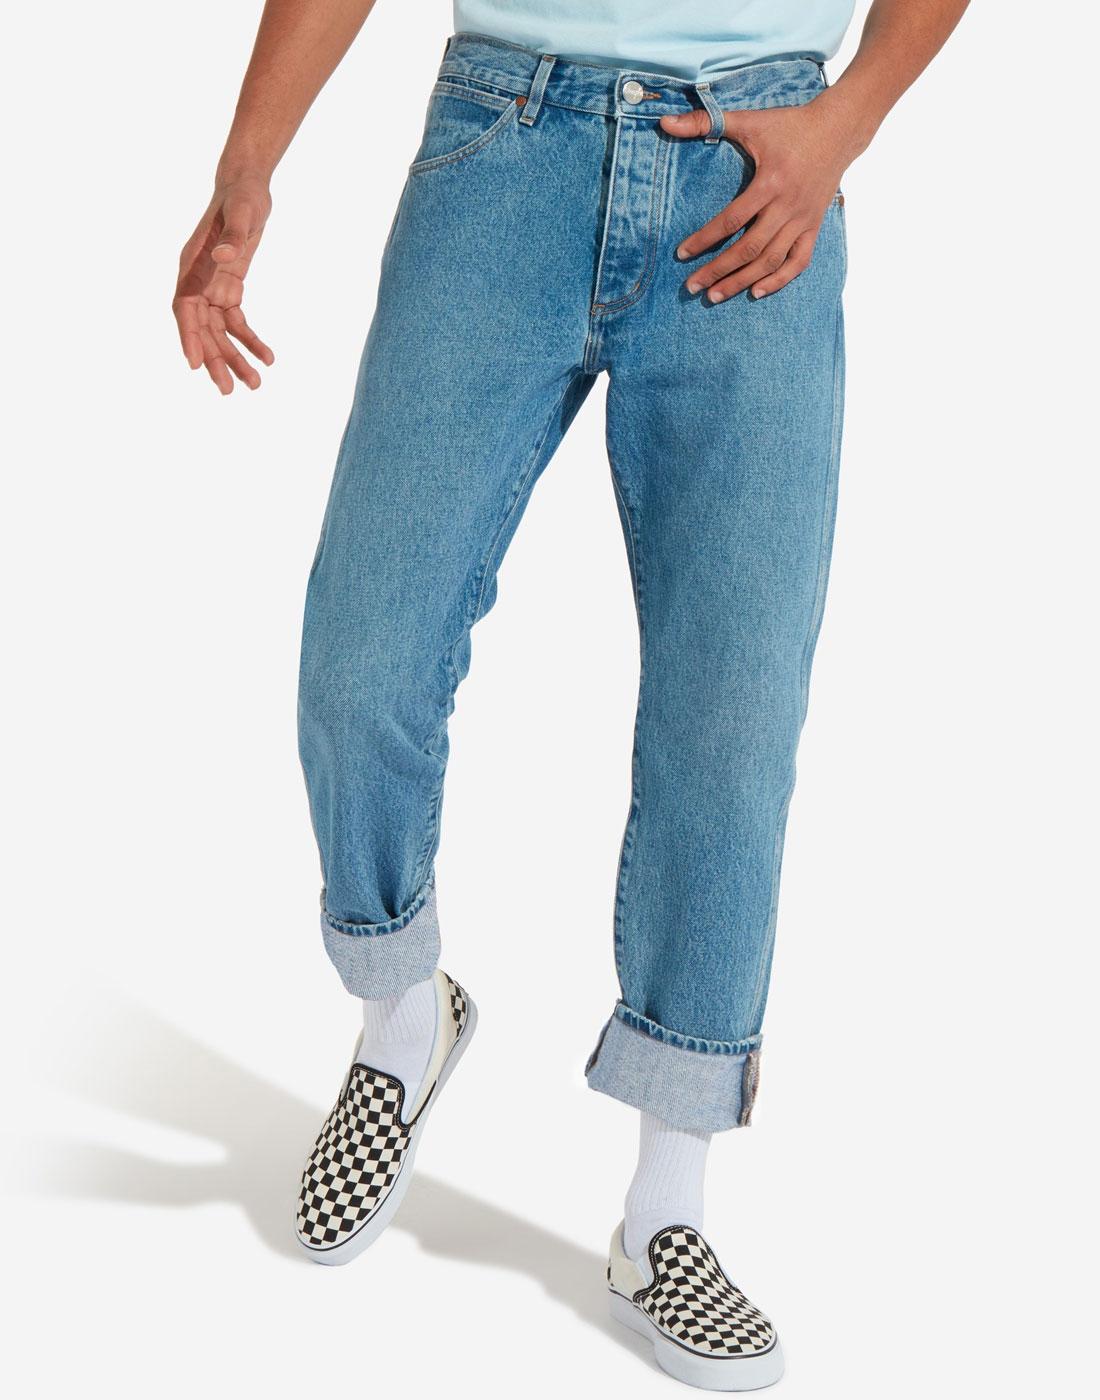 Slider WRANGLER Slider Regular Tapered Jeans (KB)